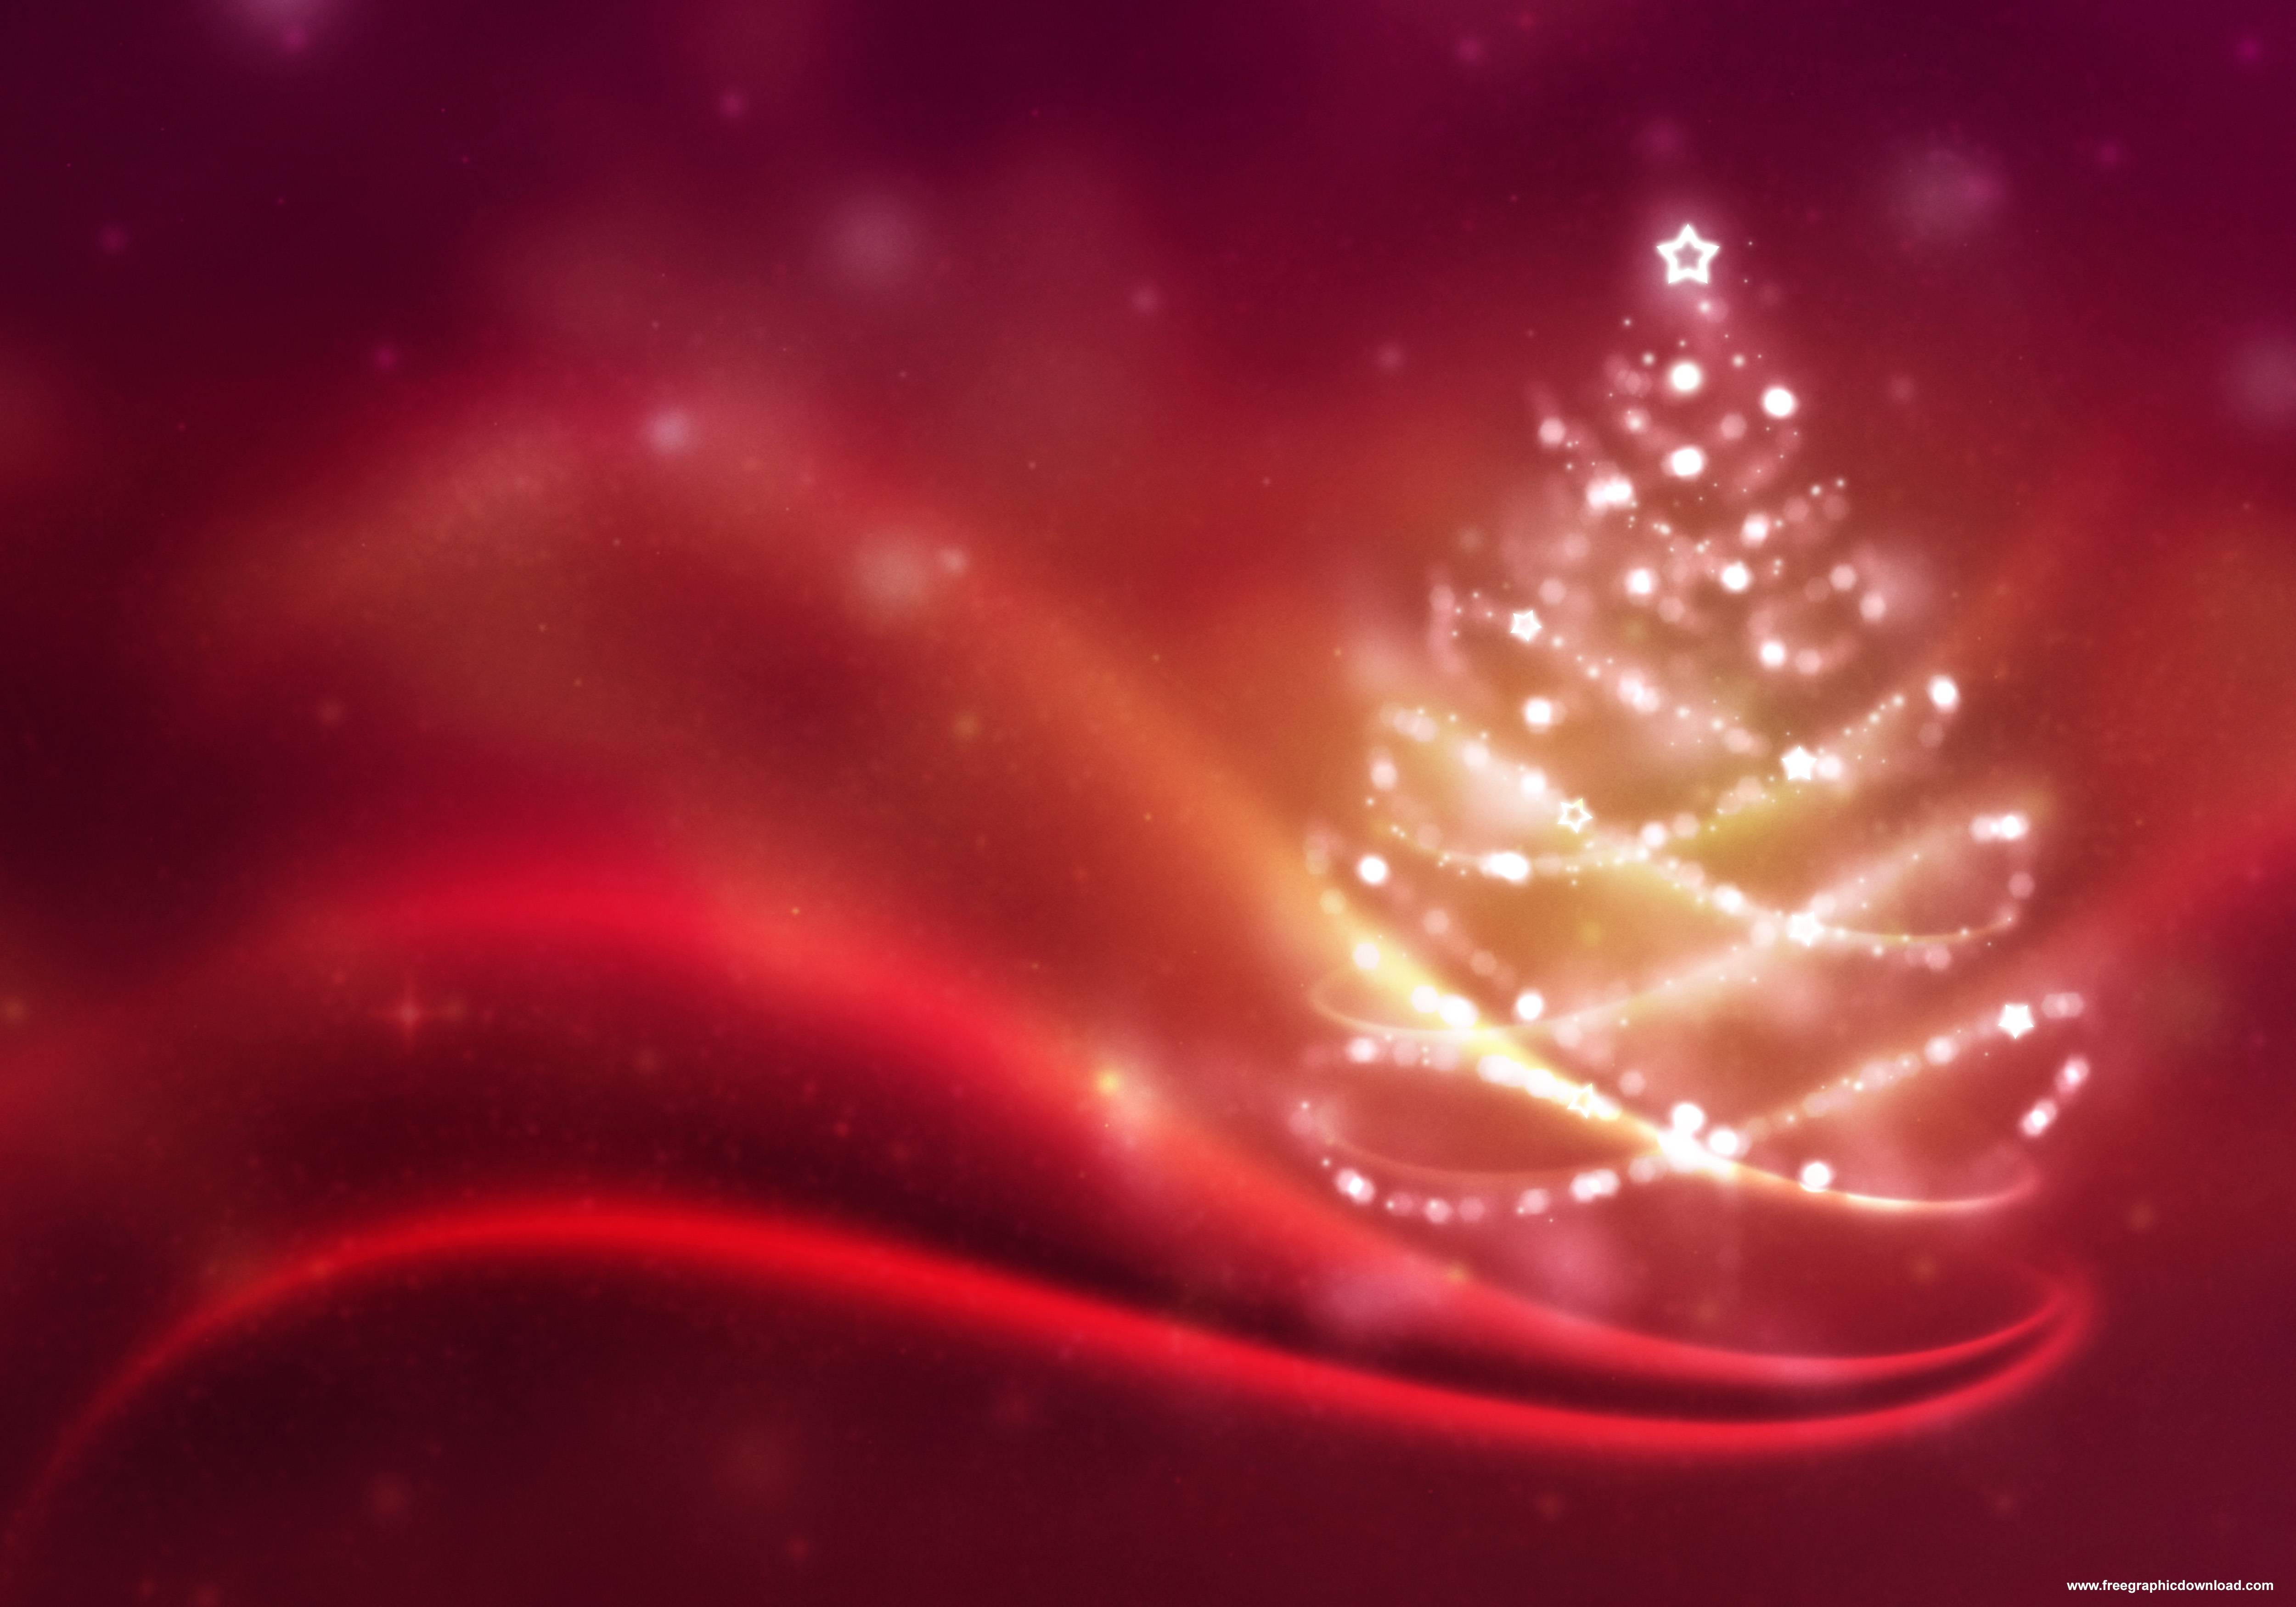 Christmas Background Image